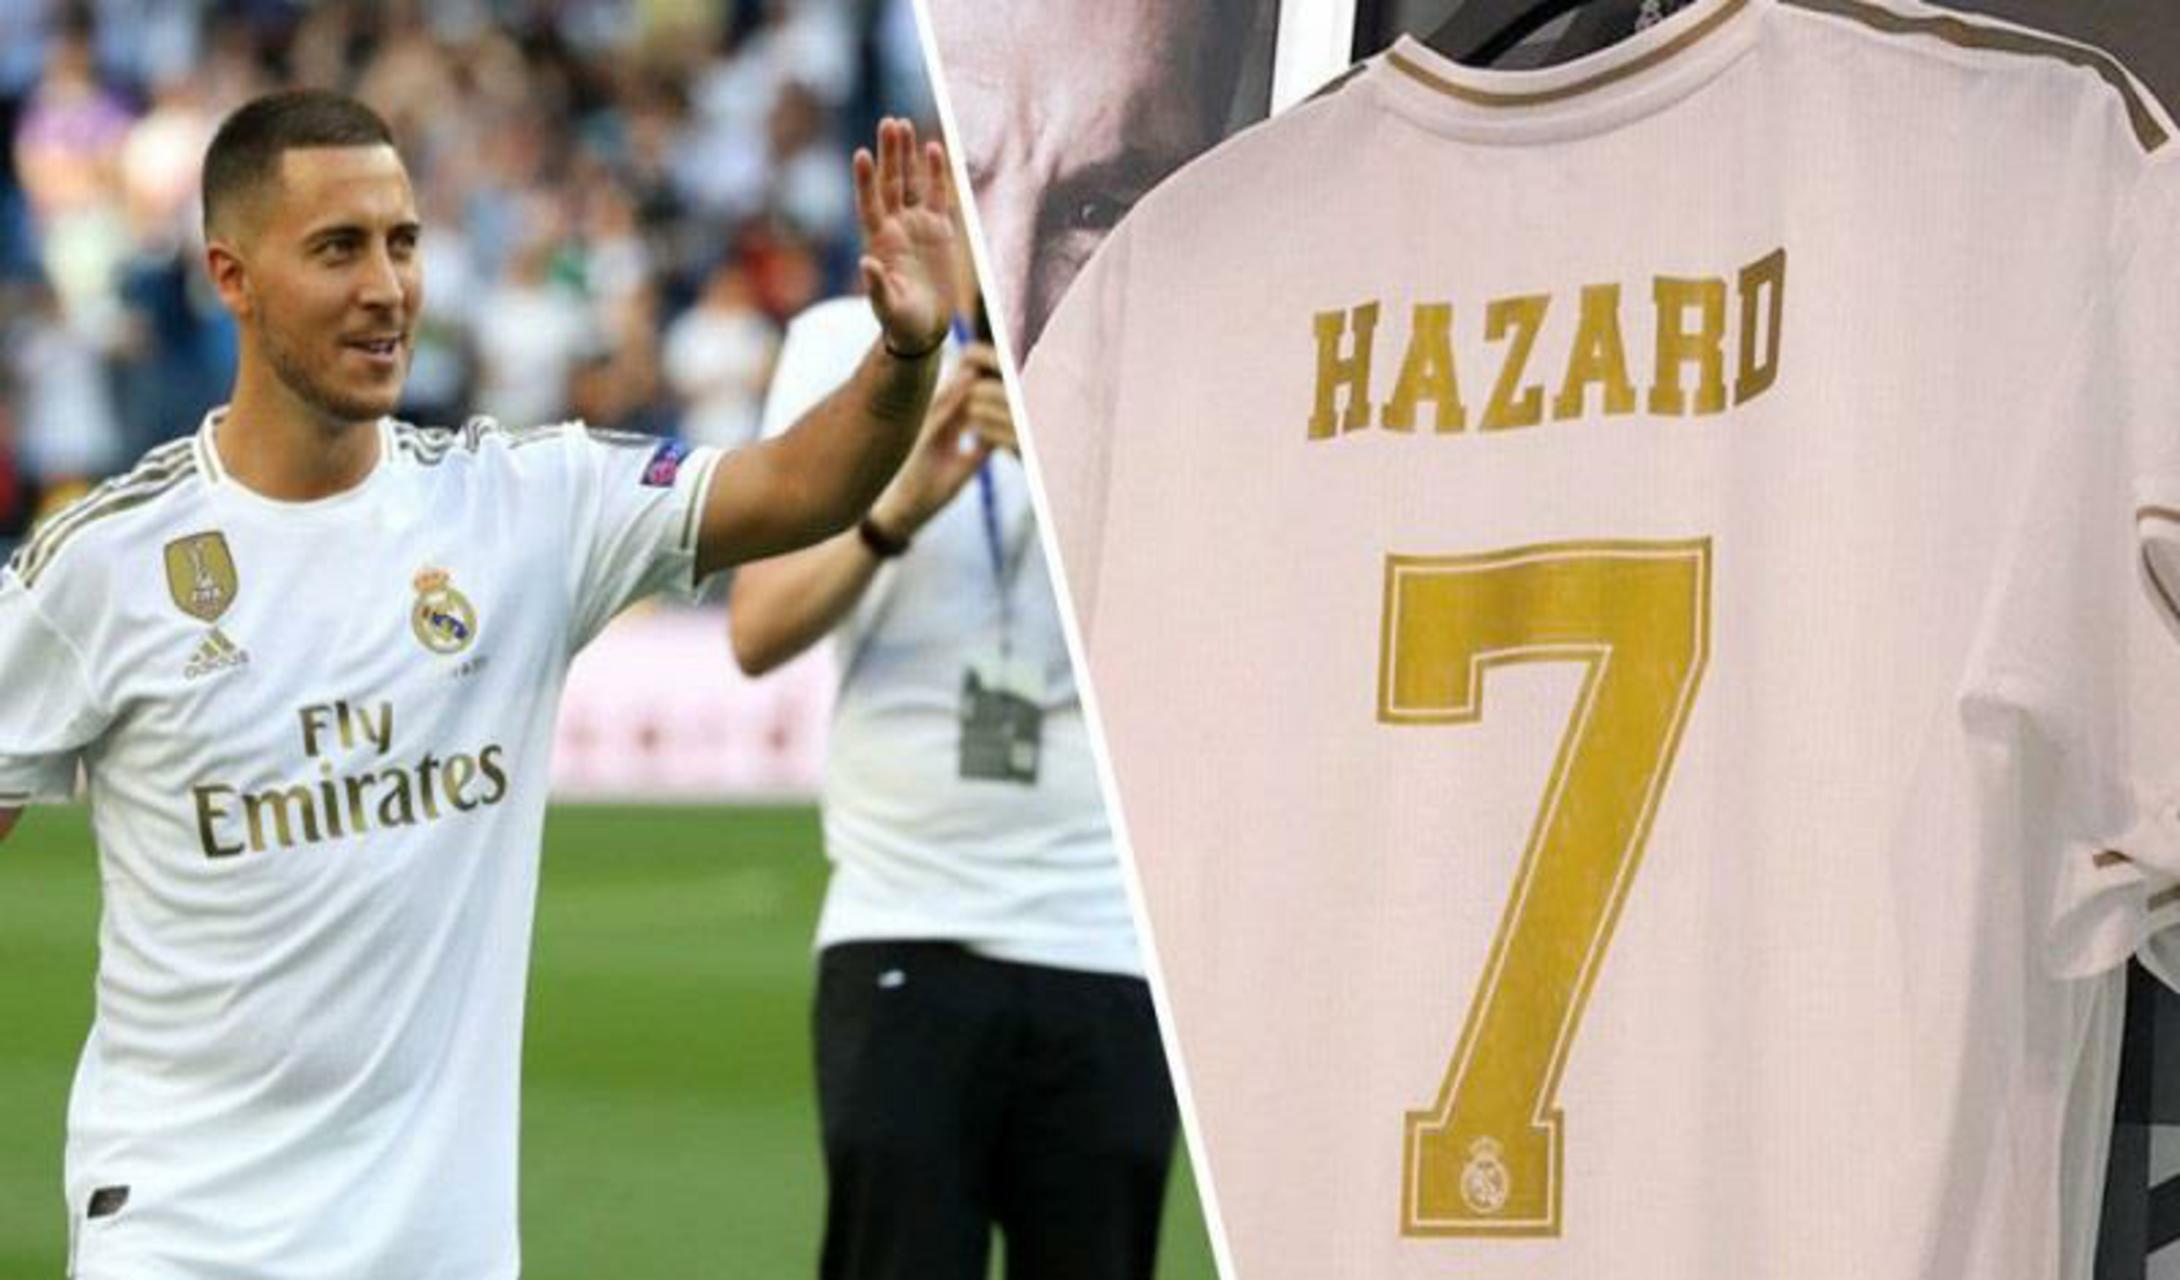 ريال مدريد يكشف رقم قميص هازارد الجديد